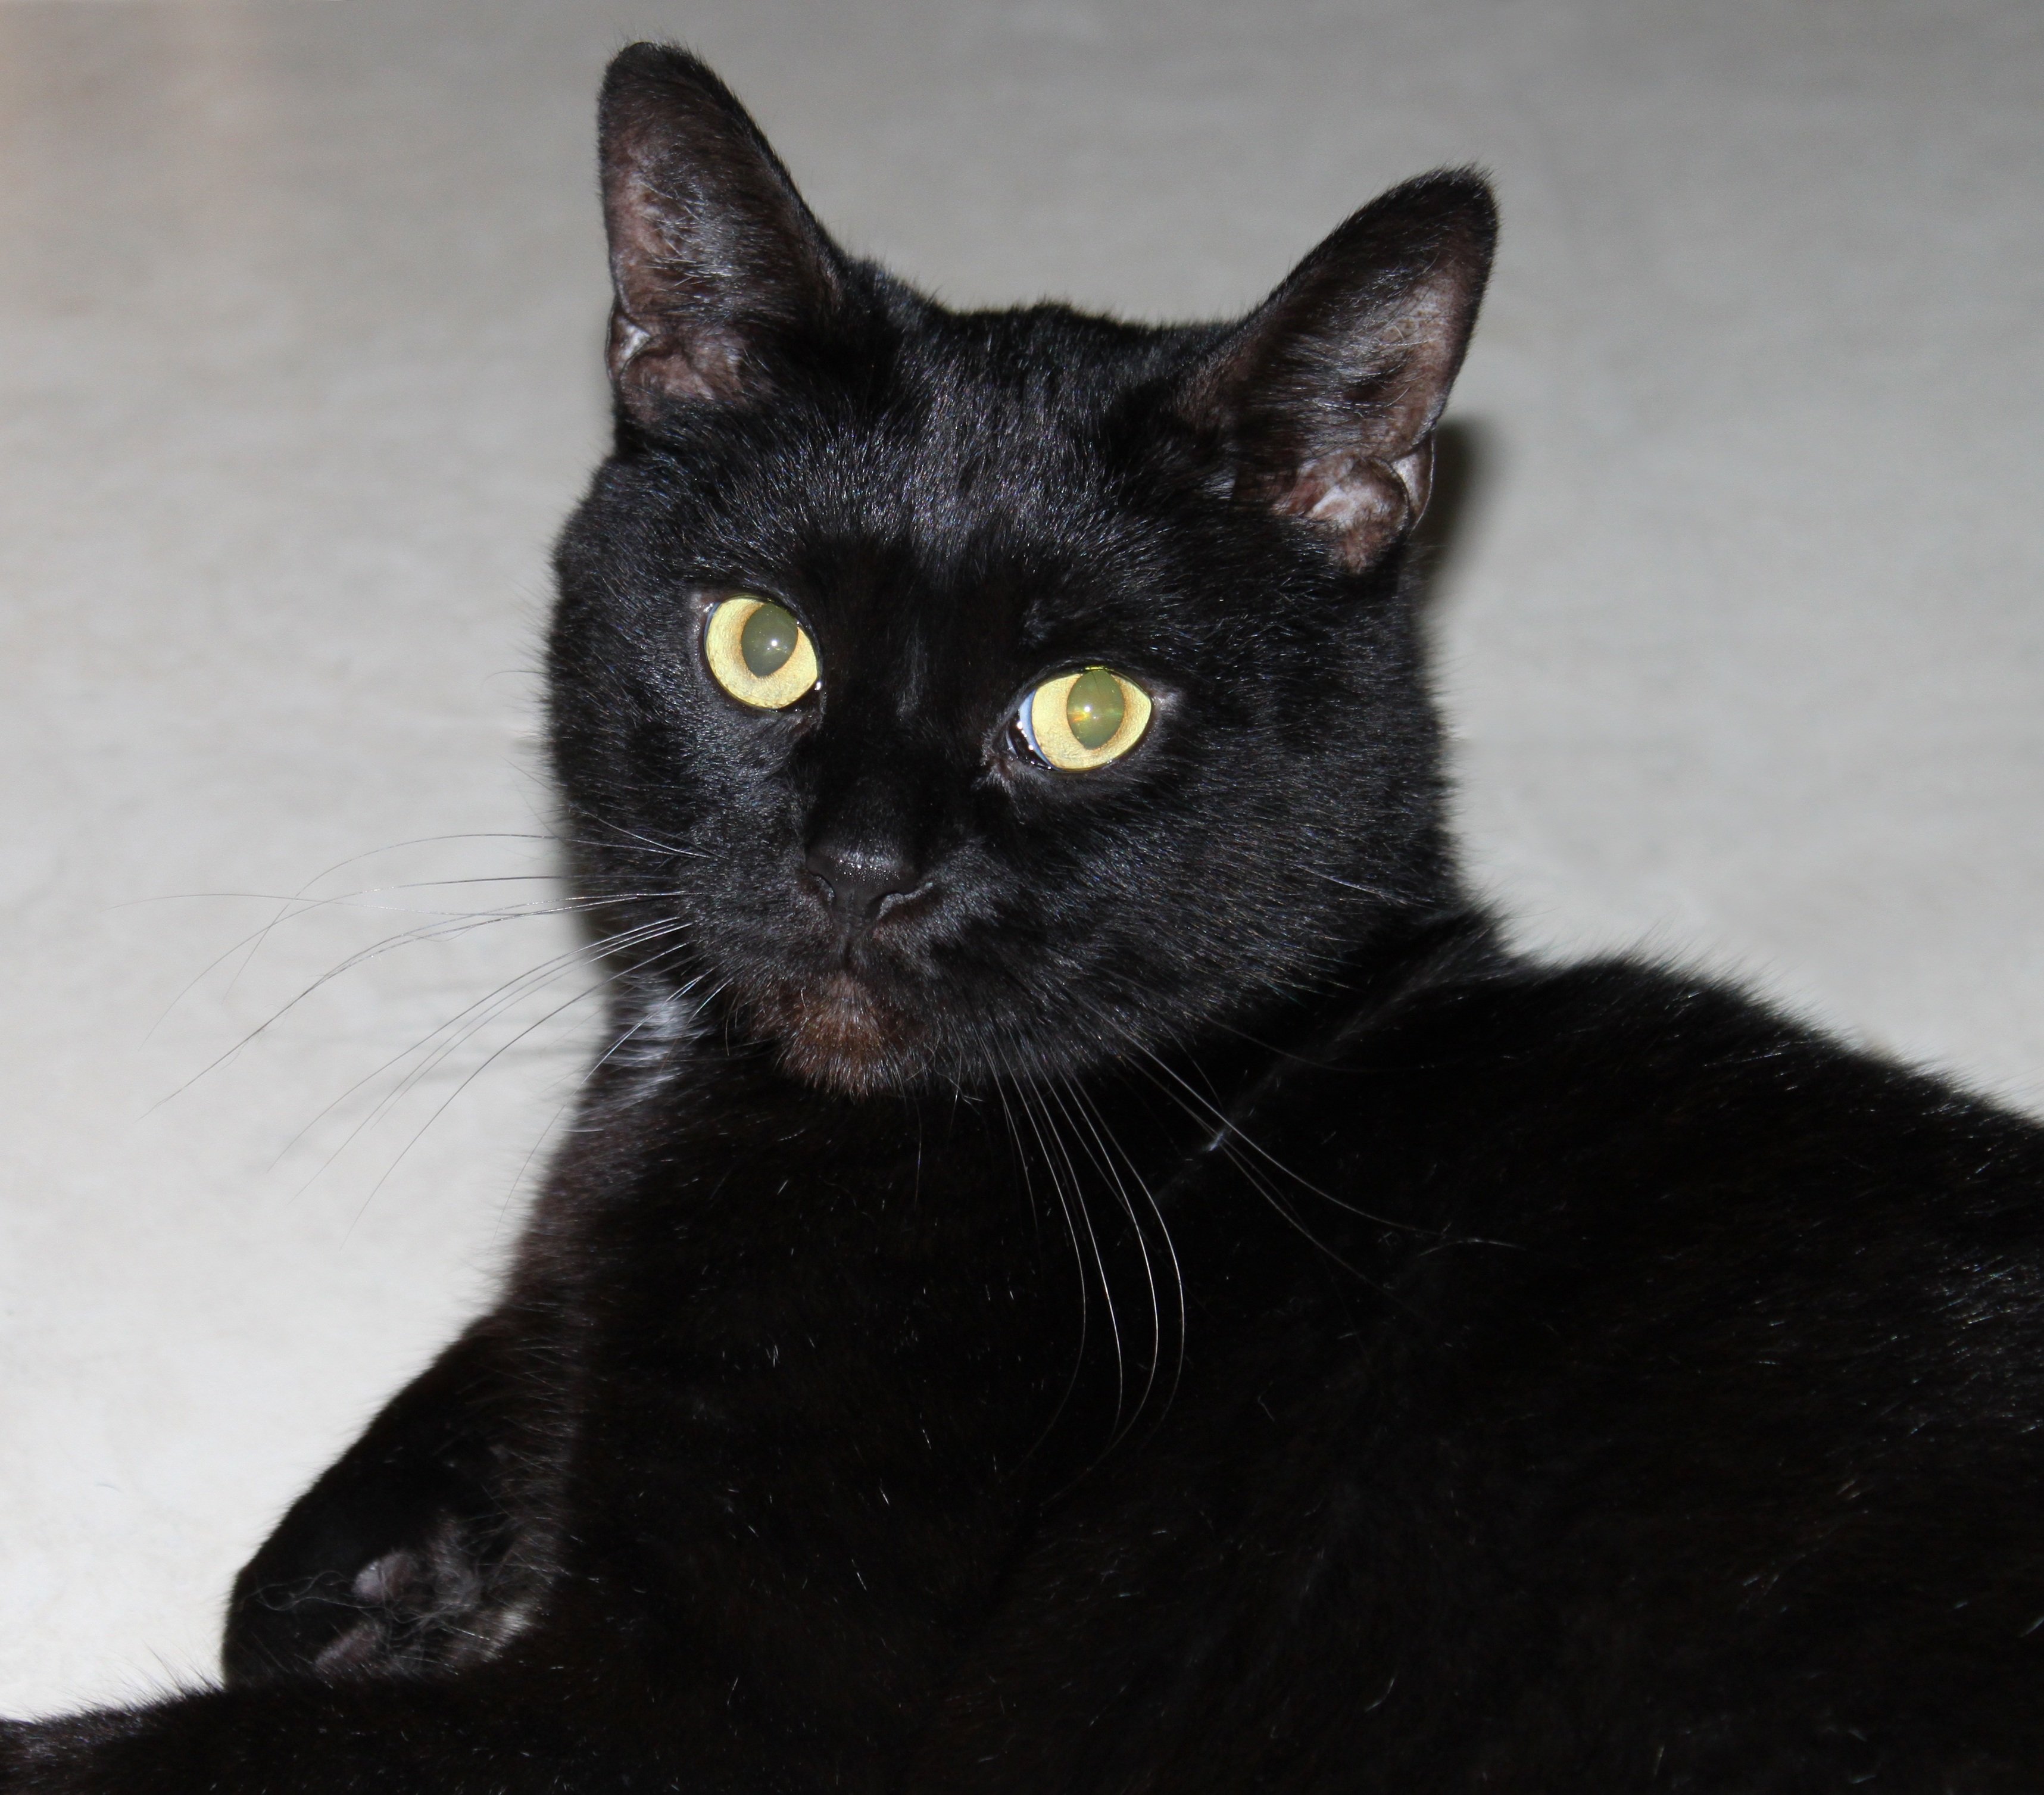 Описание черной кошки. Бомбейская кошка. Бомбейская короткошерстная кошка. Бомбейская кошка длинношерстная. Европейская короткошерстная кошка черная.